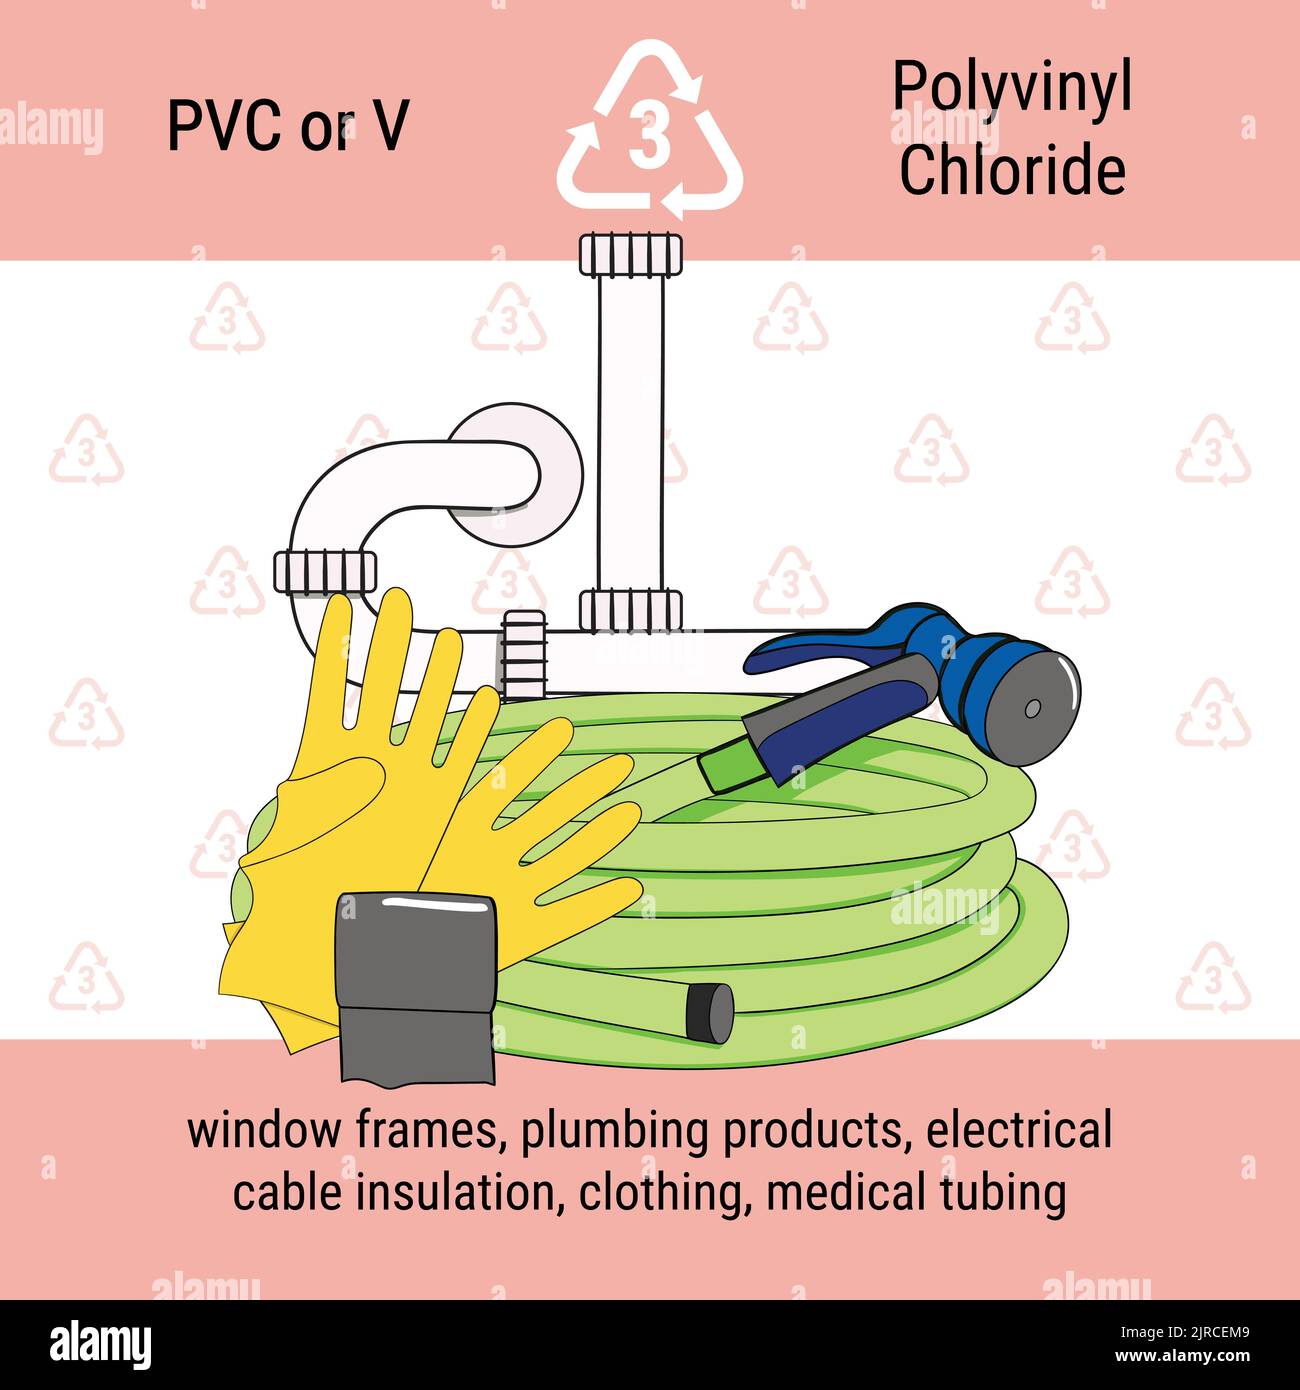 Infografik zum Recycling-Code für PVC-Kunststoff. Polyvinylchlorid ist Polymer für Rohre, Rohrleitungen, Fensterrahmen. Poster zur Abfallwirtschaft. Handgezogen ve Stock Vektor